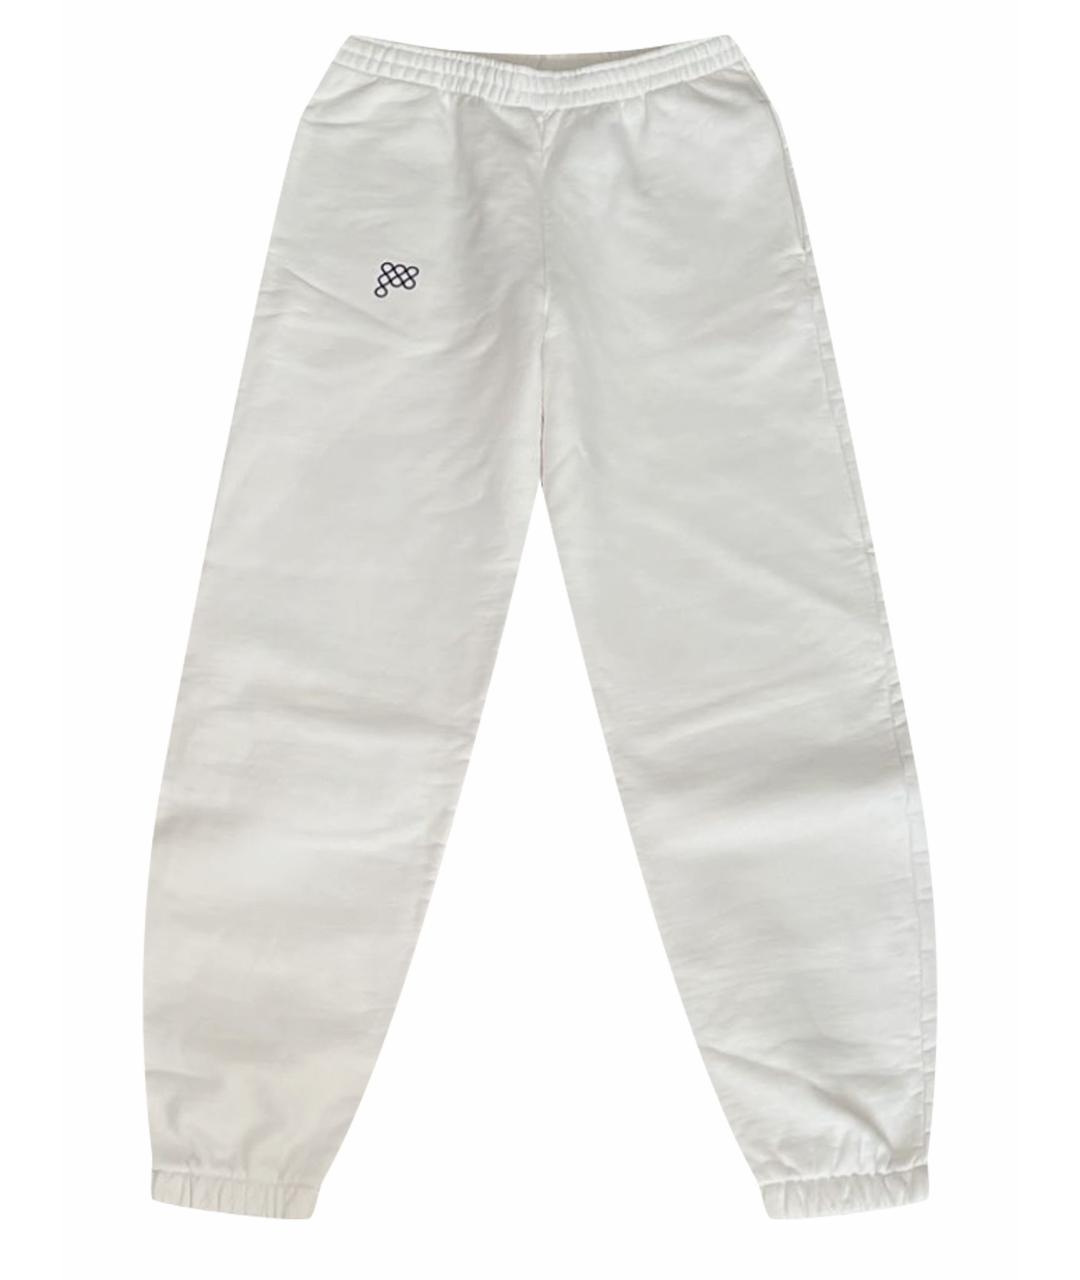 THE PANGAIA Белые хлопковые спортивные брюки и шорты, фото 1